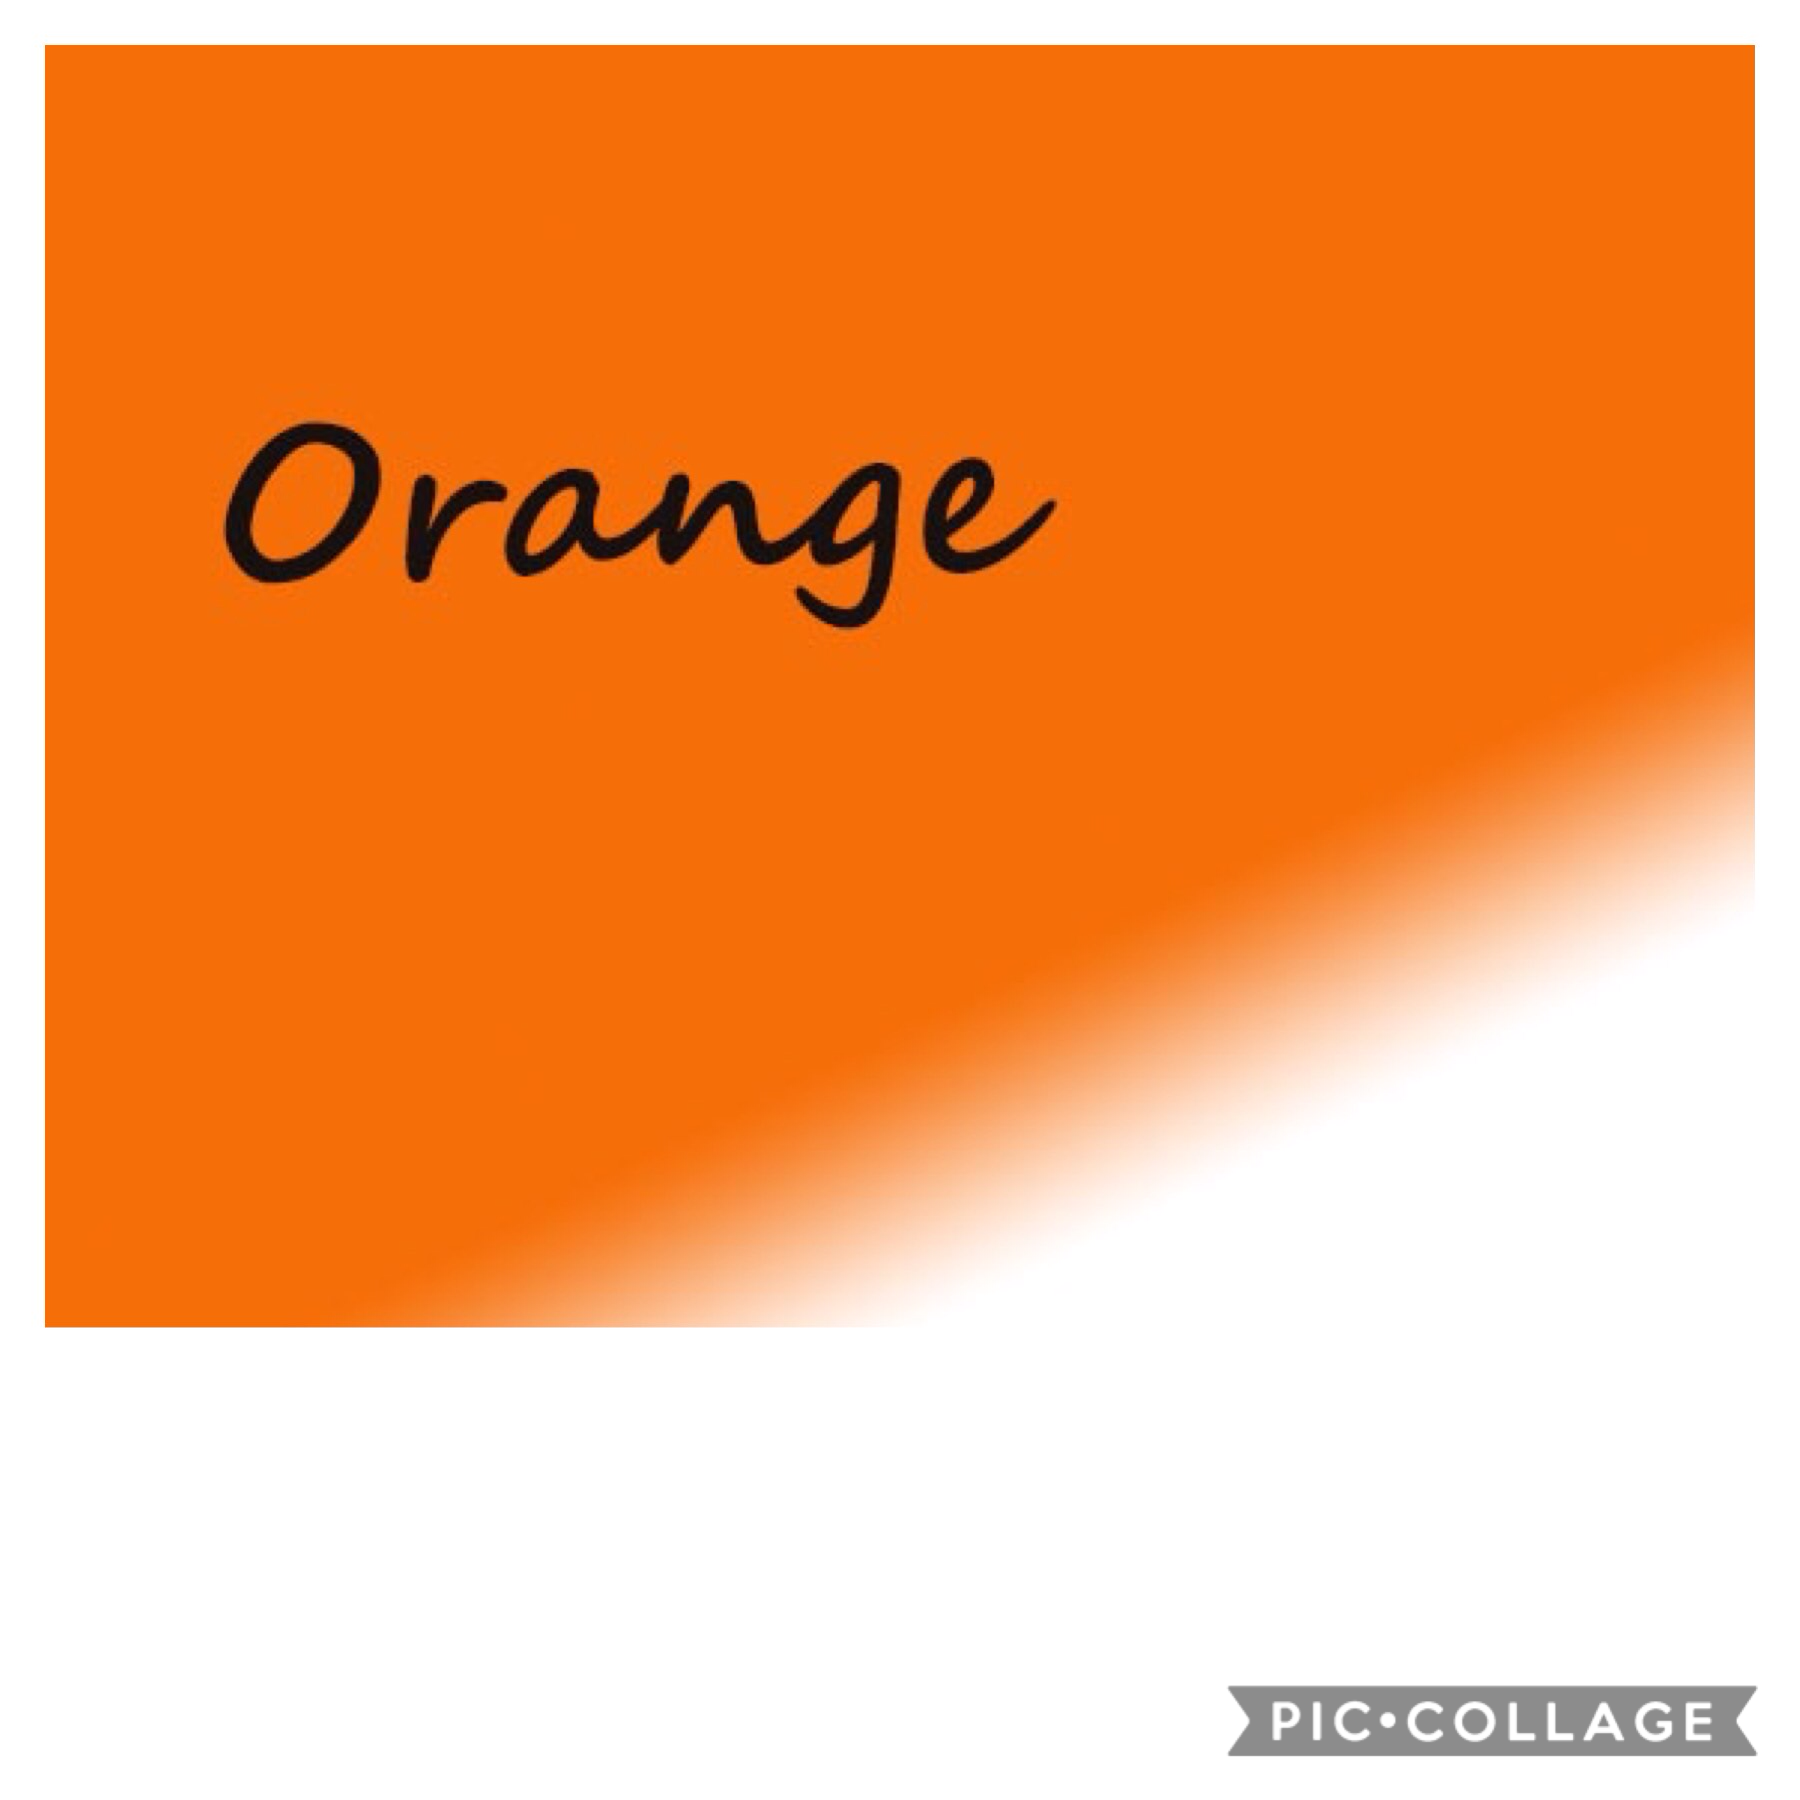 Orange photoshop